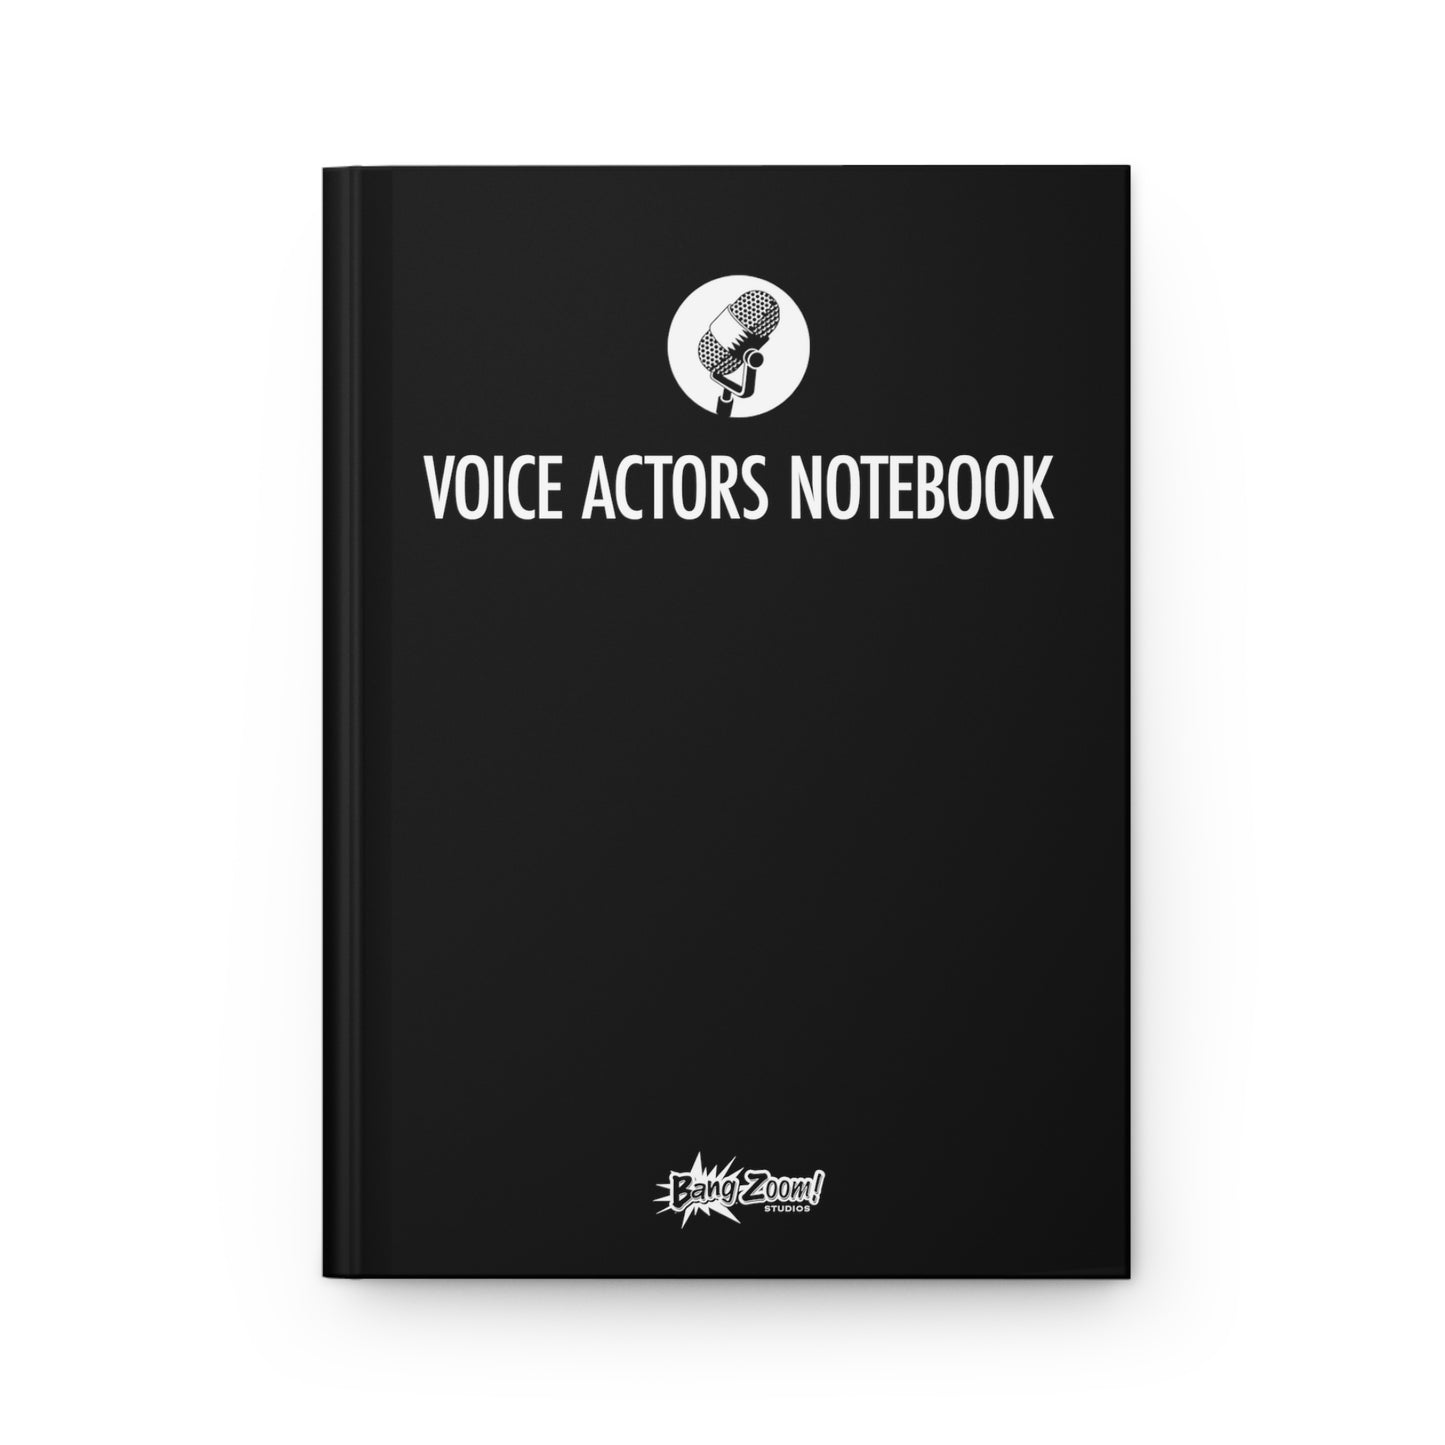 Voice Actors Notebook